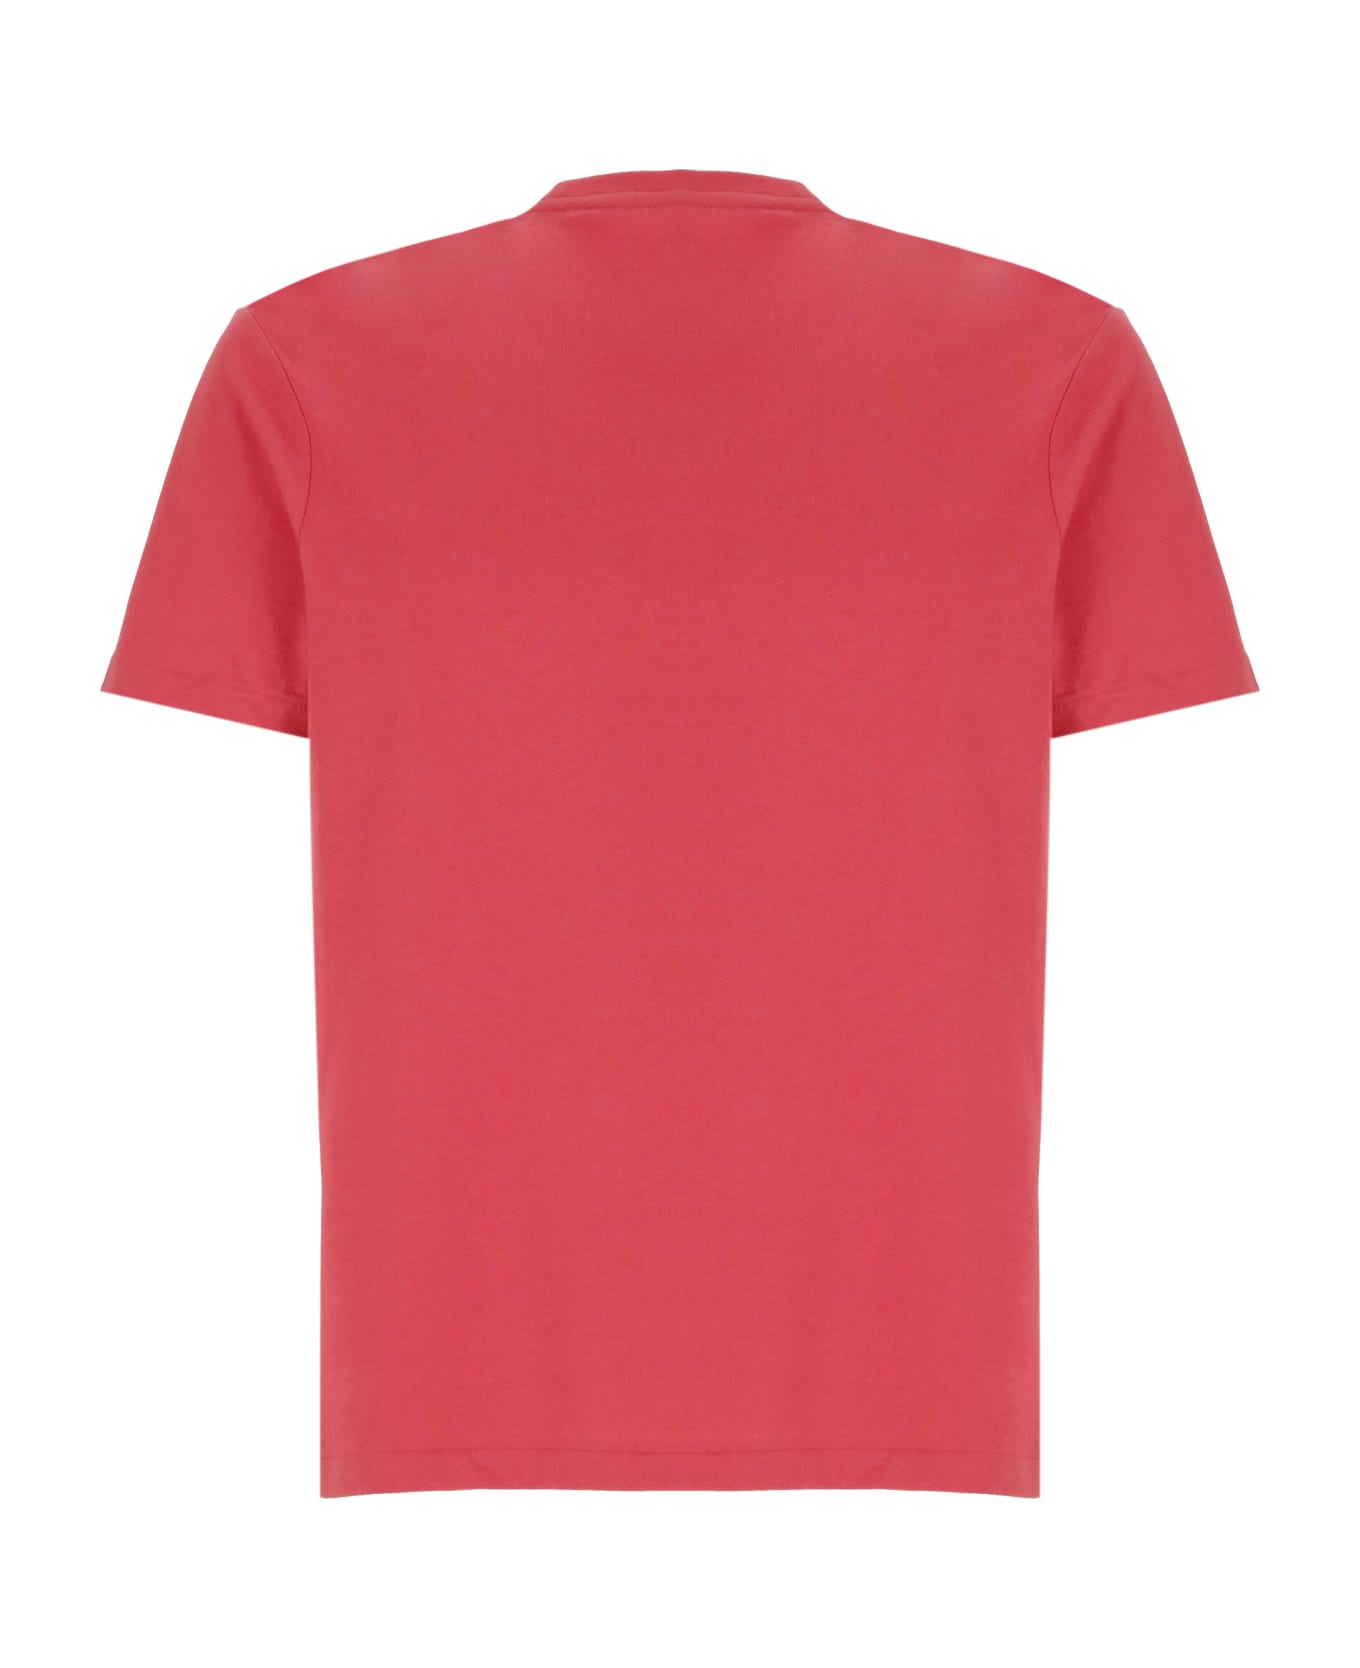 Ralph Lauren 'classics' Cotton T-shirt - Red シャツ